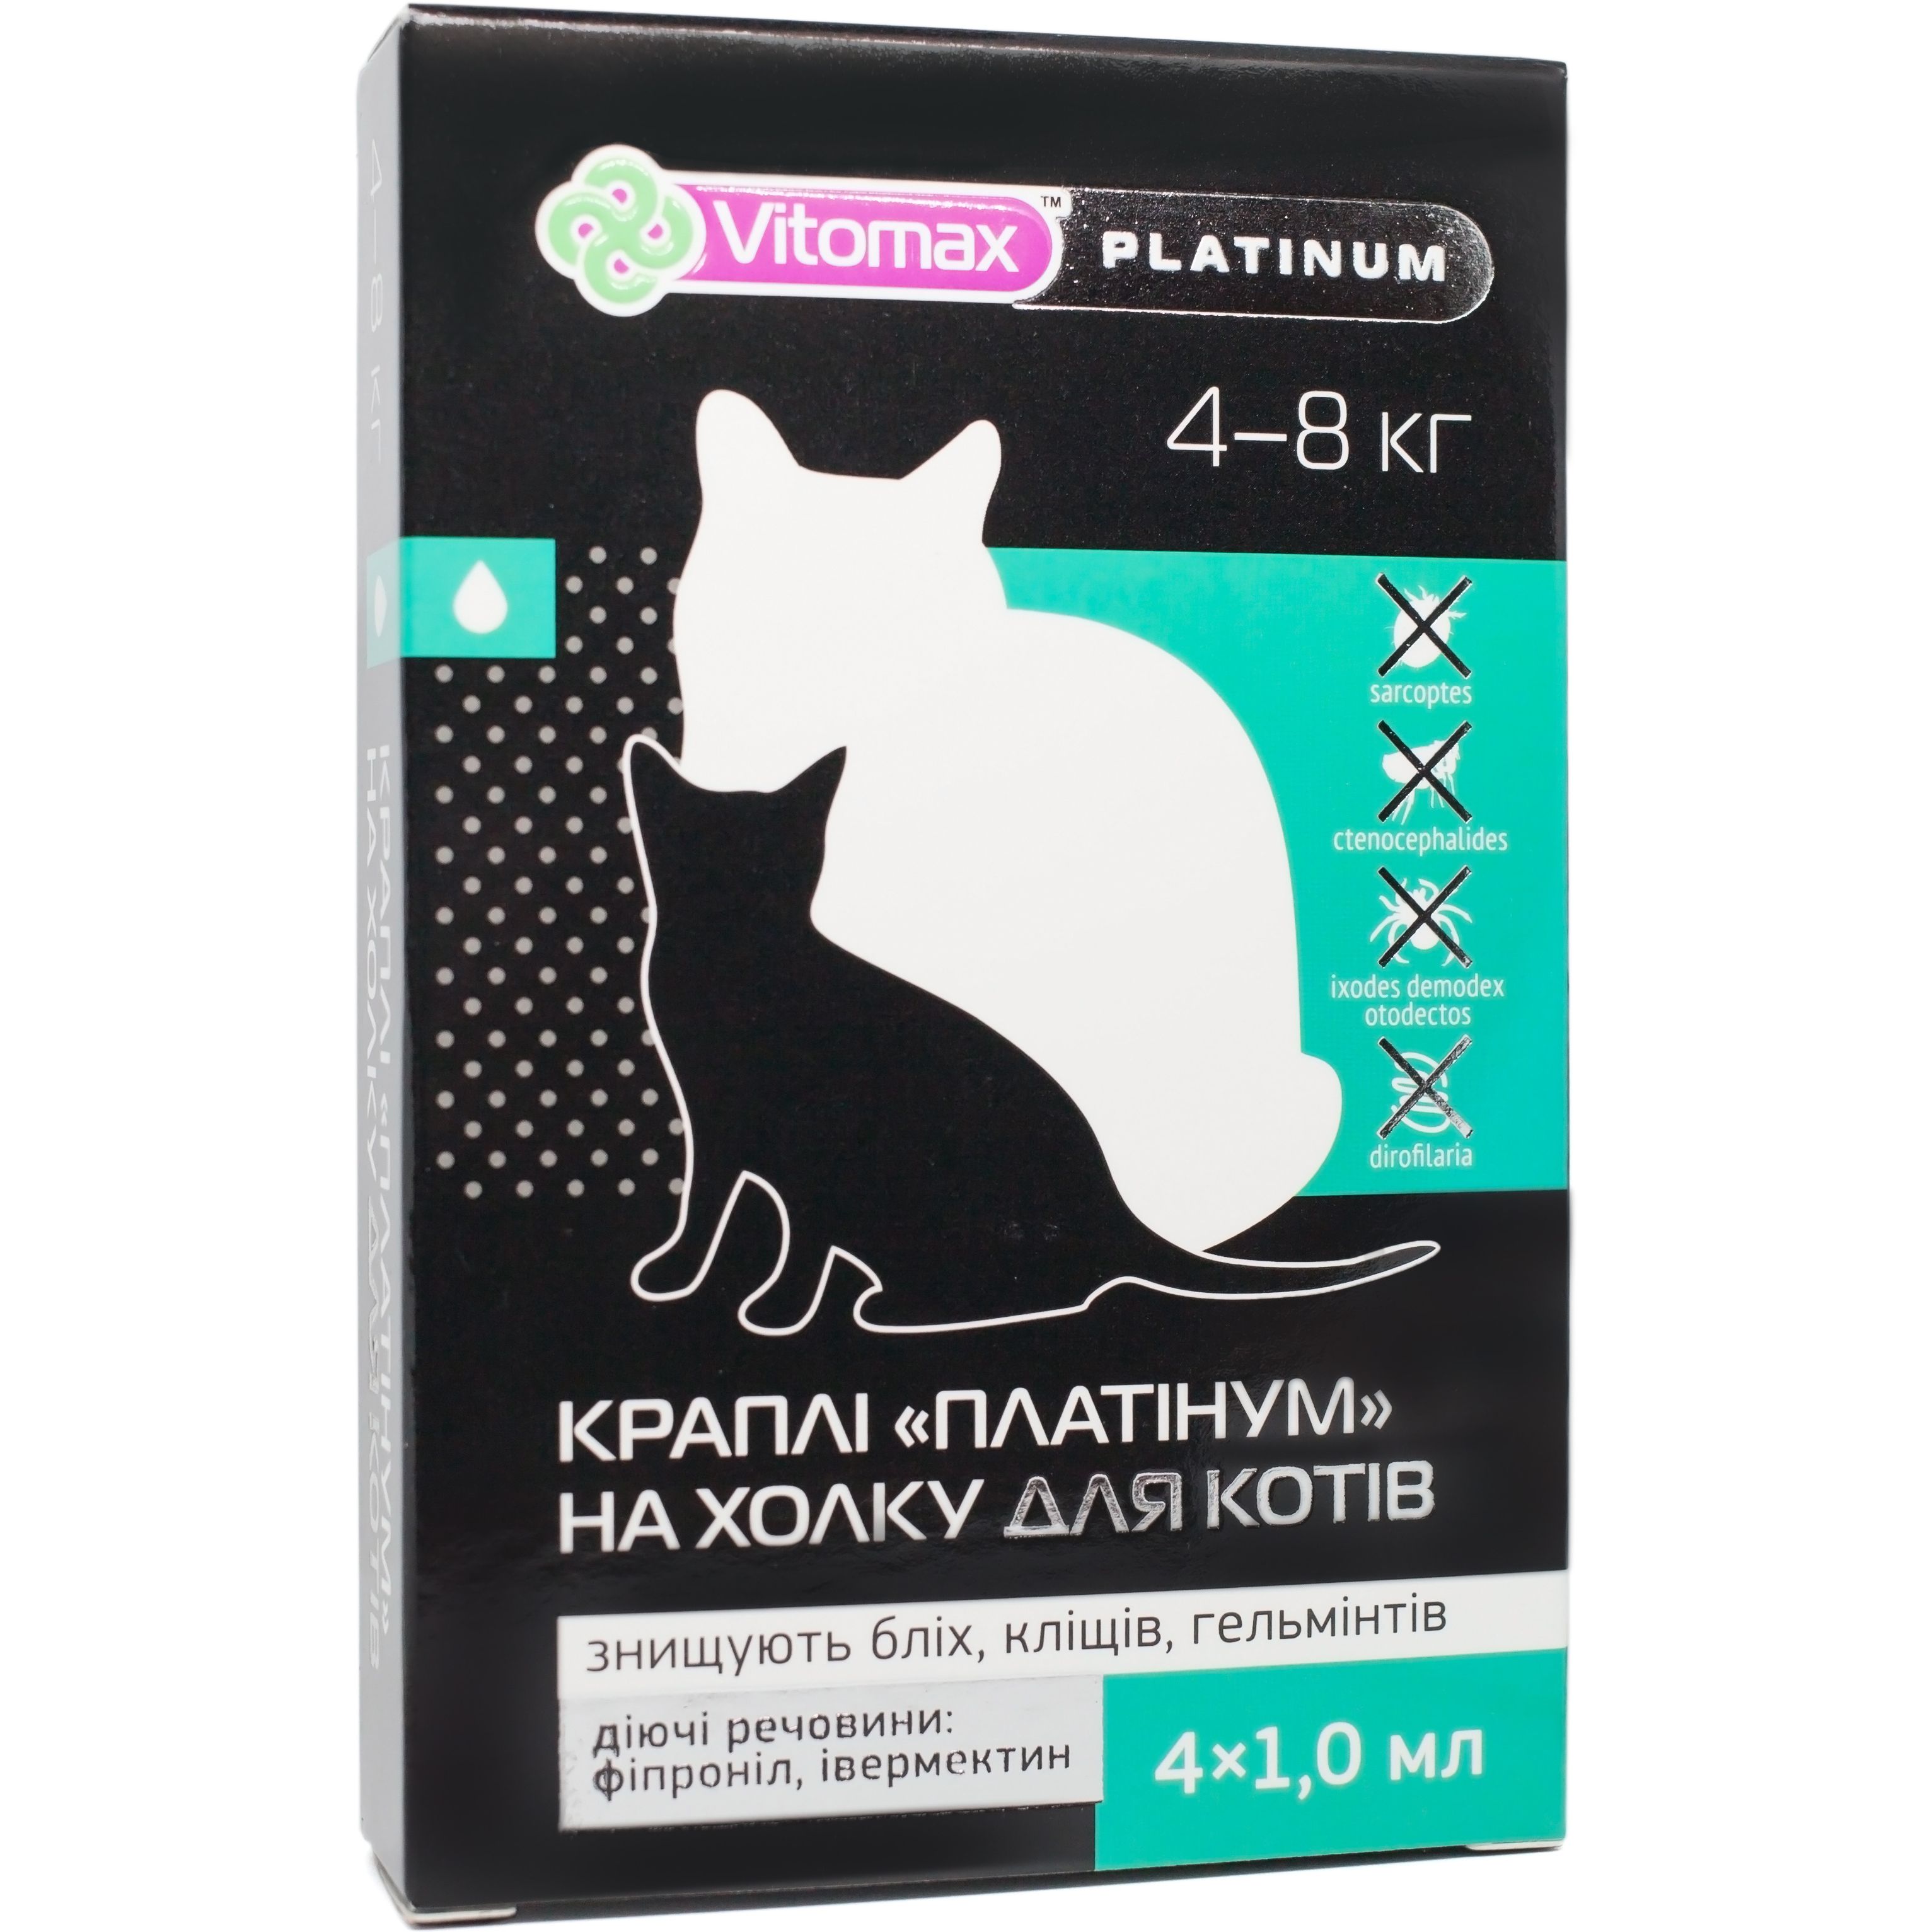 Капли на холку Vitomax Platinum против блох, клещей и гельминтов для кошек 4-8 кг, 1 мл (4 пипетки) - фото 1